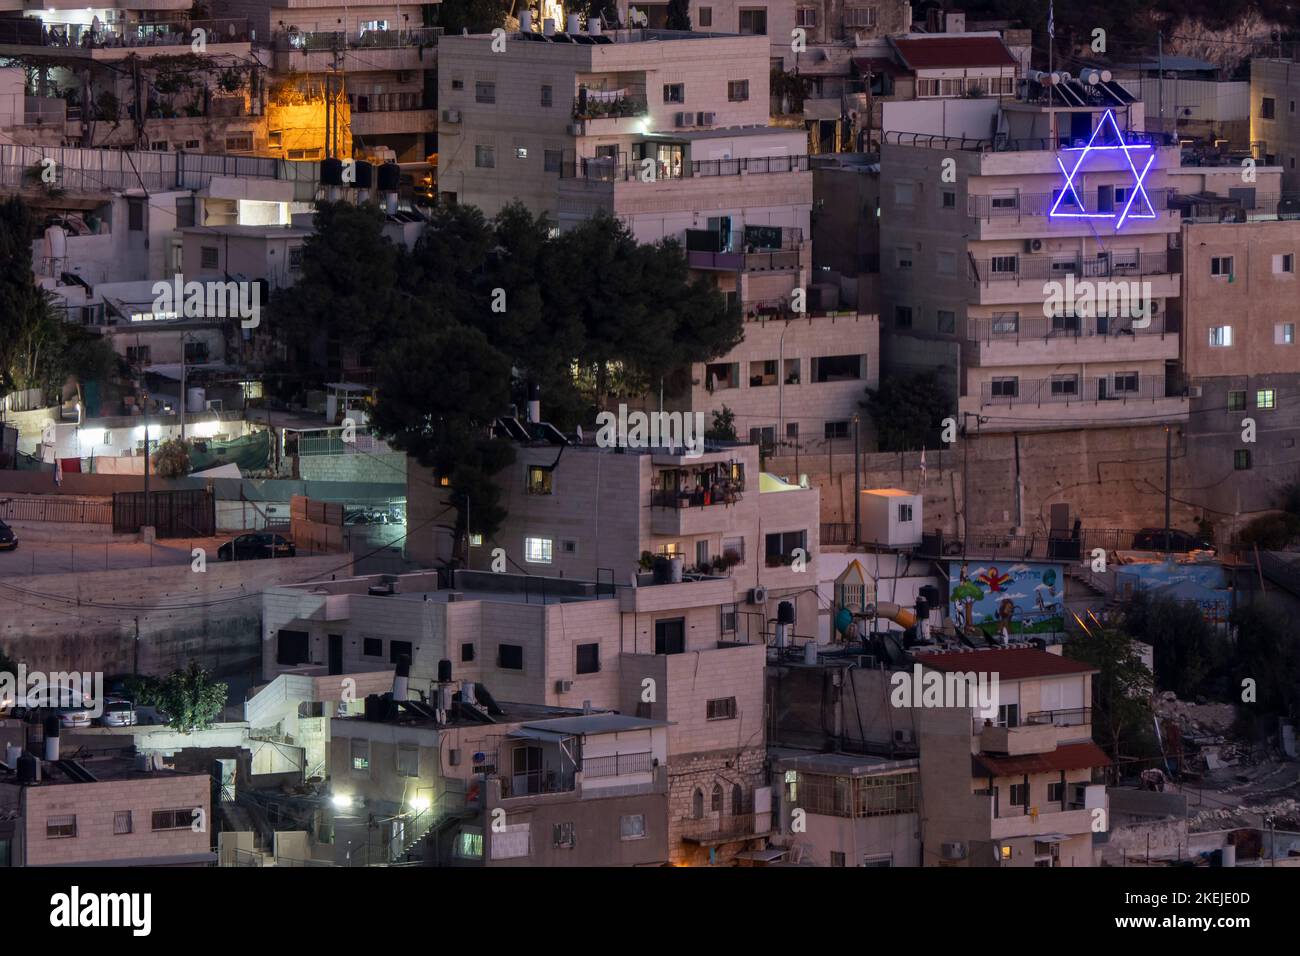 Étoiles de David illuminées au néon bleues installées à l'extérieur de bâtiments de colons juifs dans la région de Batan al-Hawa à Silwan, un quartier majoritairement palestinien à la périphérie de la vieille ville à Jérusalem-est, en Israël.Depuis la guerre des six jours de 1967, les organisations juives ont cherché à rétablir une présence juive à Silwan.Plus de 50 familles juives vivent parmi environ 50,000 Palestiniens de la région, certaines dans des foyers acquis des Arabes qui prétendent ne pas savoir qu'ils vendaient leurs maisons au peuple juif. Banque D'Images